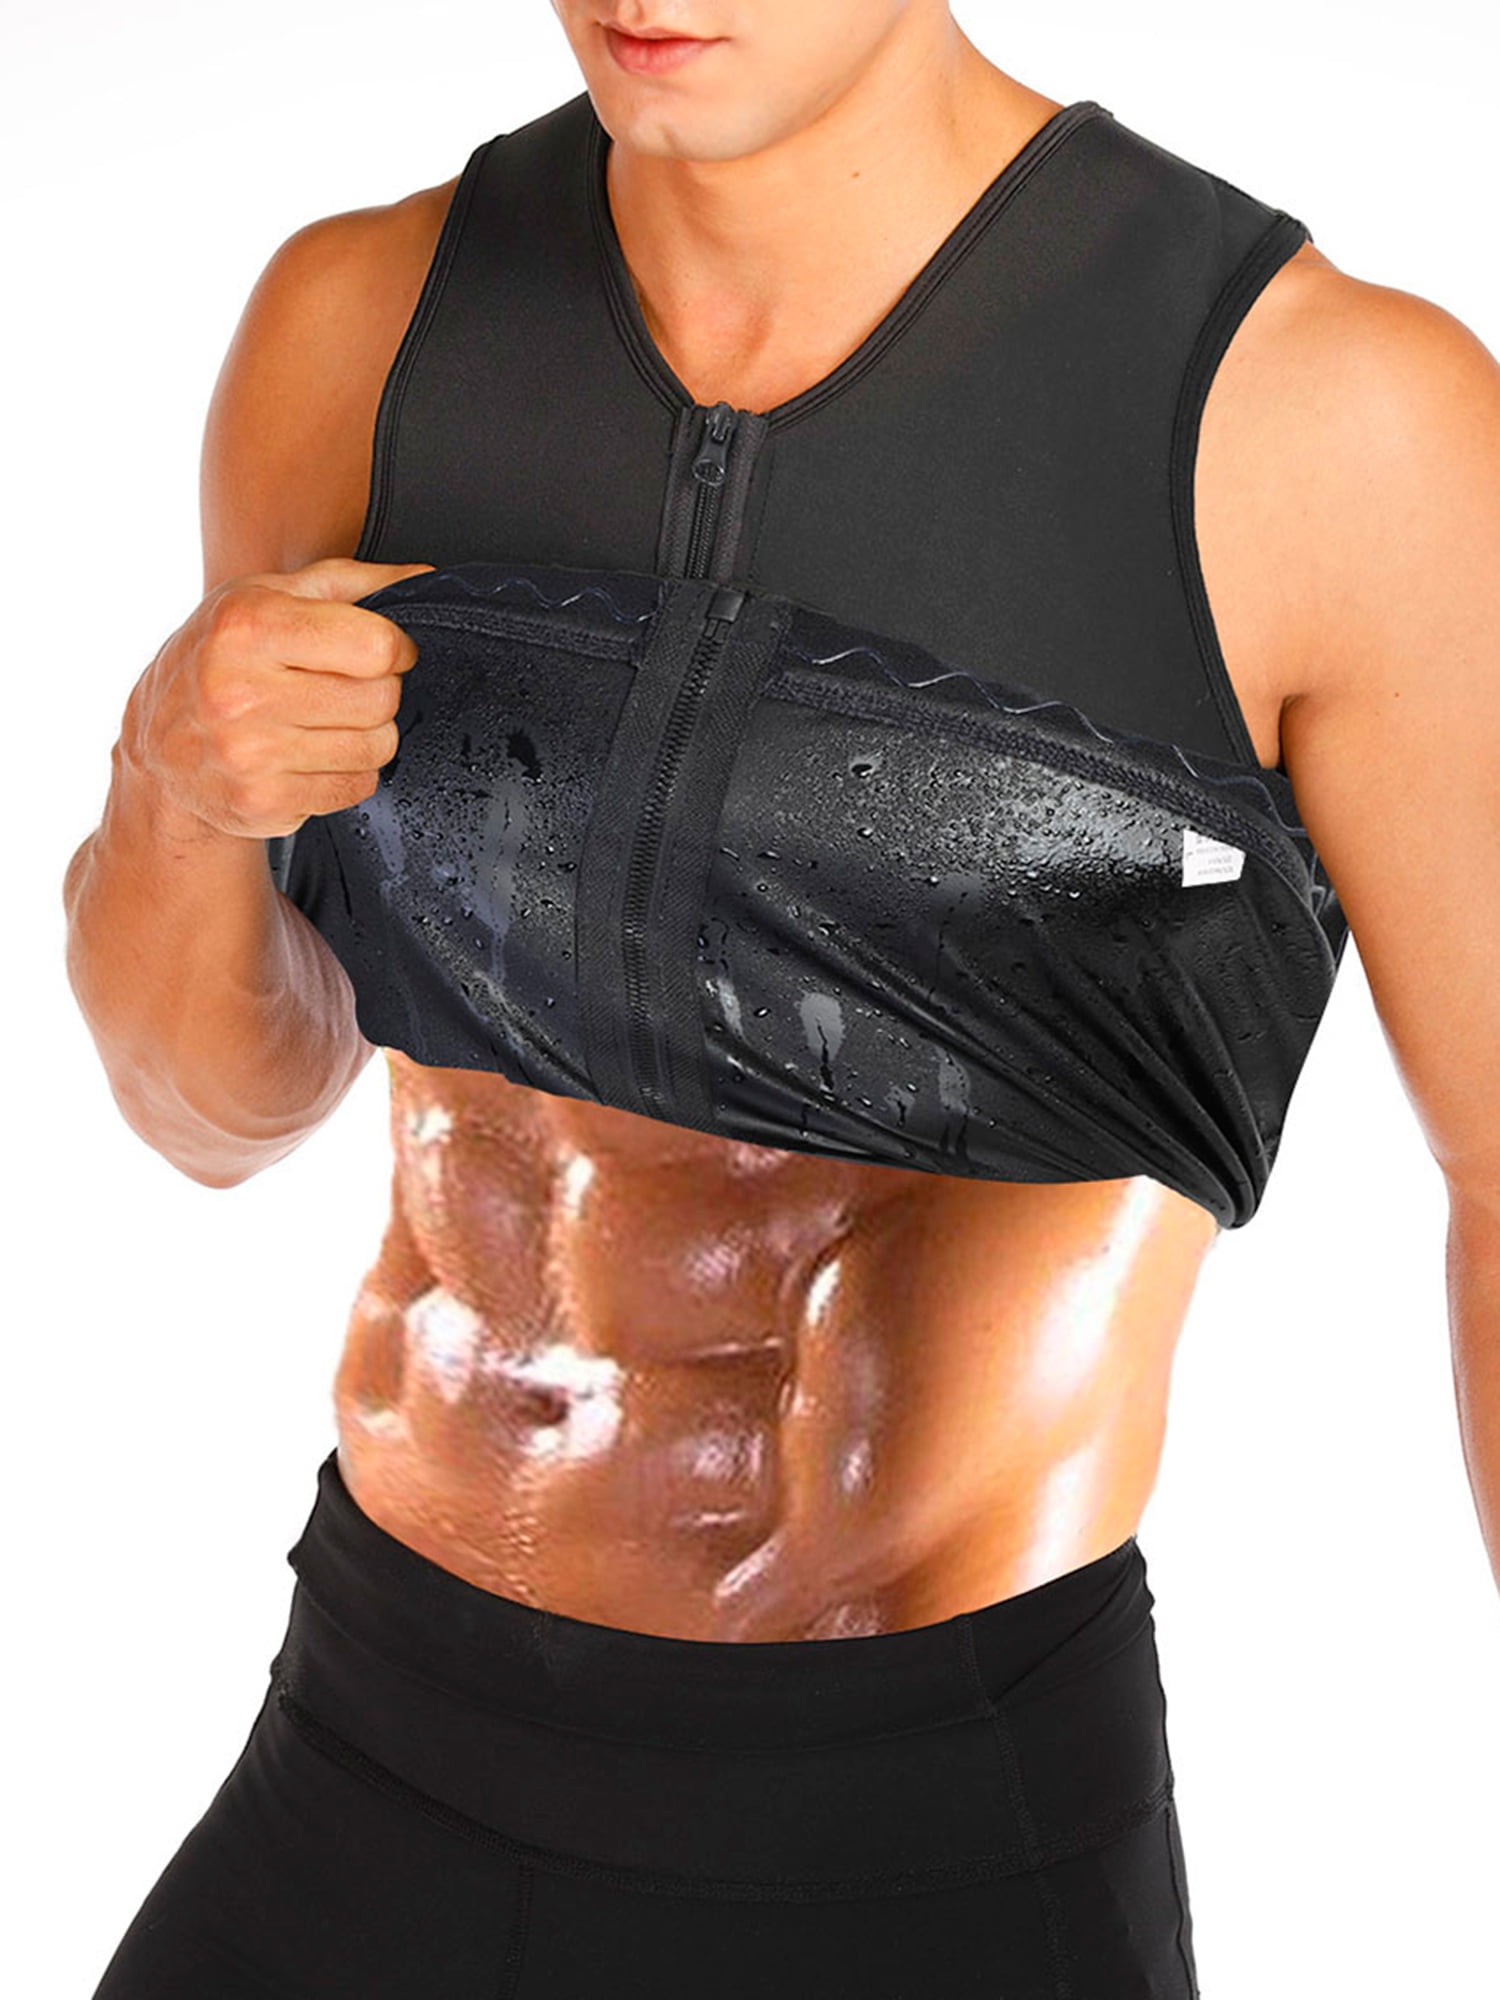 Sauna Sweat Suit Neoprene Shirt Weight Loss Slimming Fitness Gym Training 